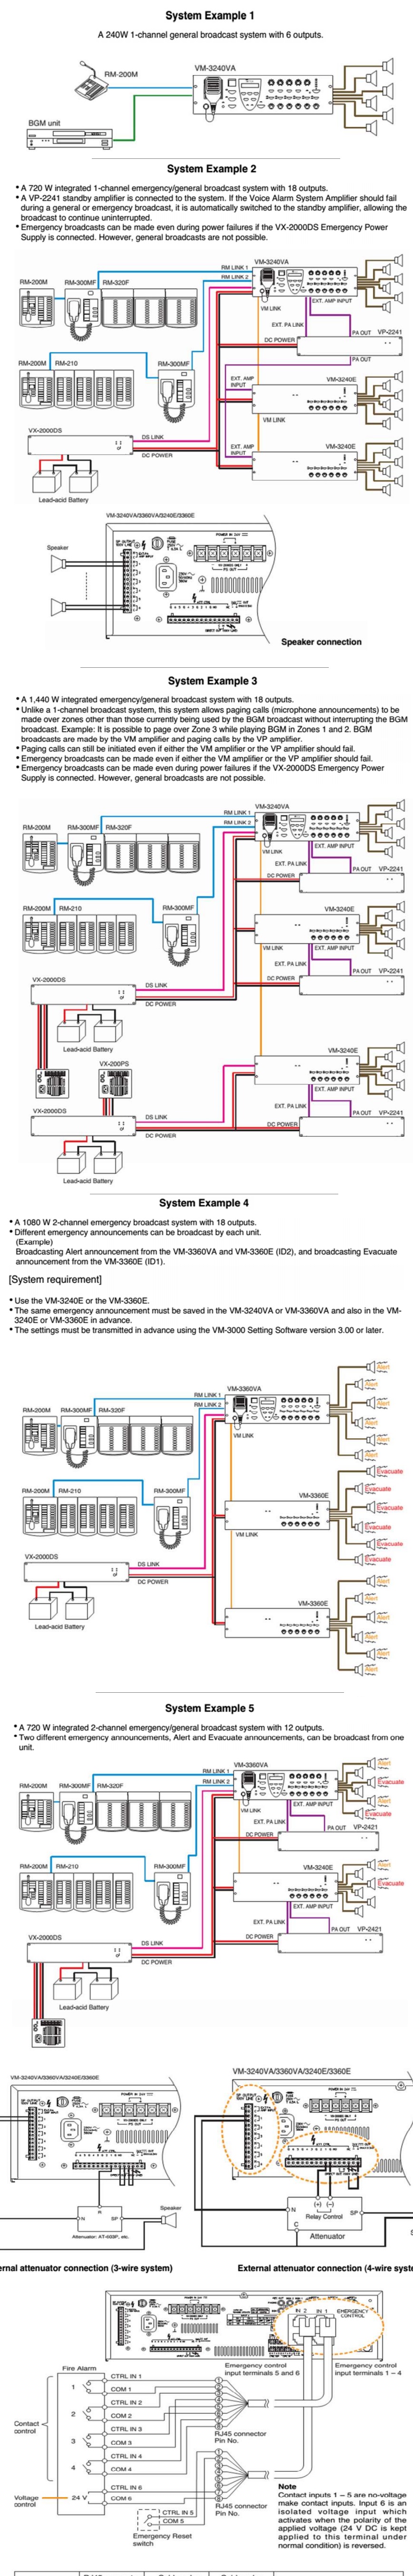 5 ví dụ hệ thống ampli TOA VM-3240VA trong hệ thống di tản VM-3000